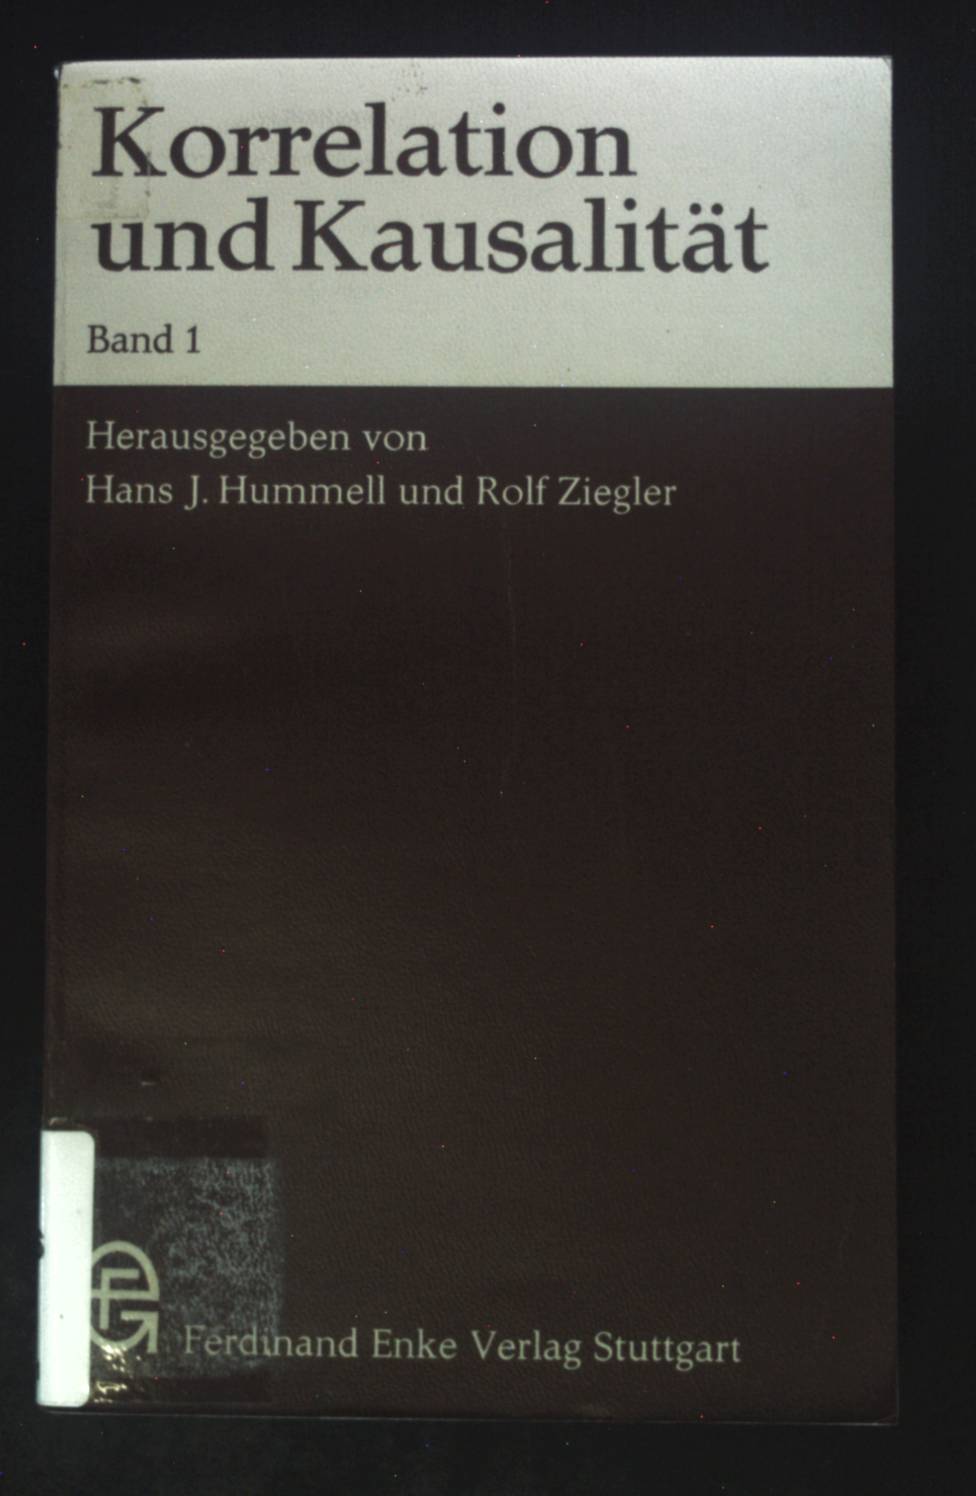 Korrelation und Kausalität; Bd. 1. - Hummell, Hans J. und Rolf Ziegler